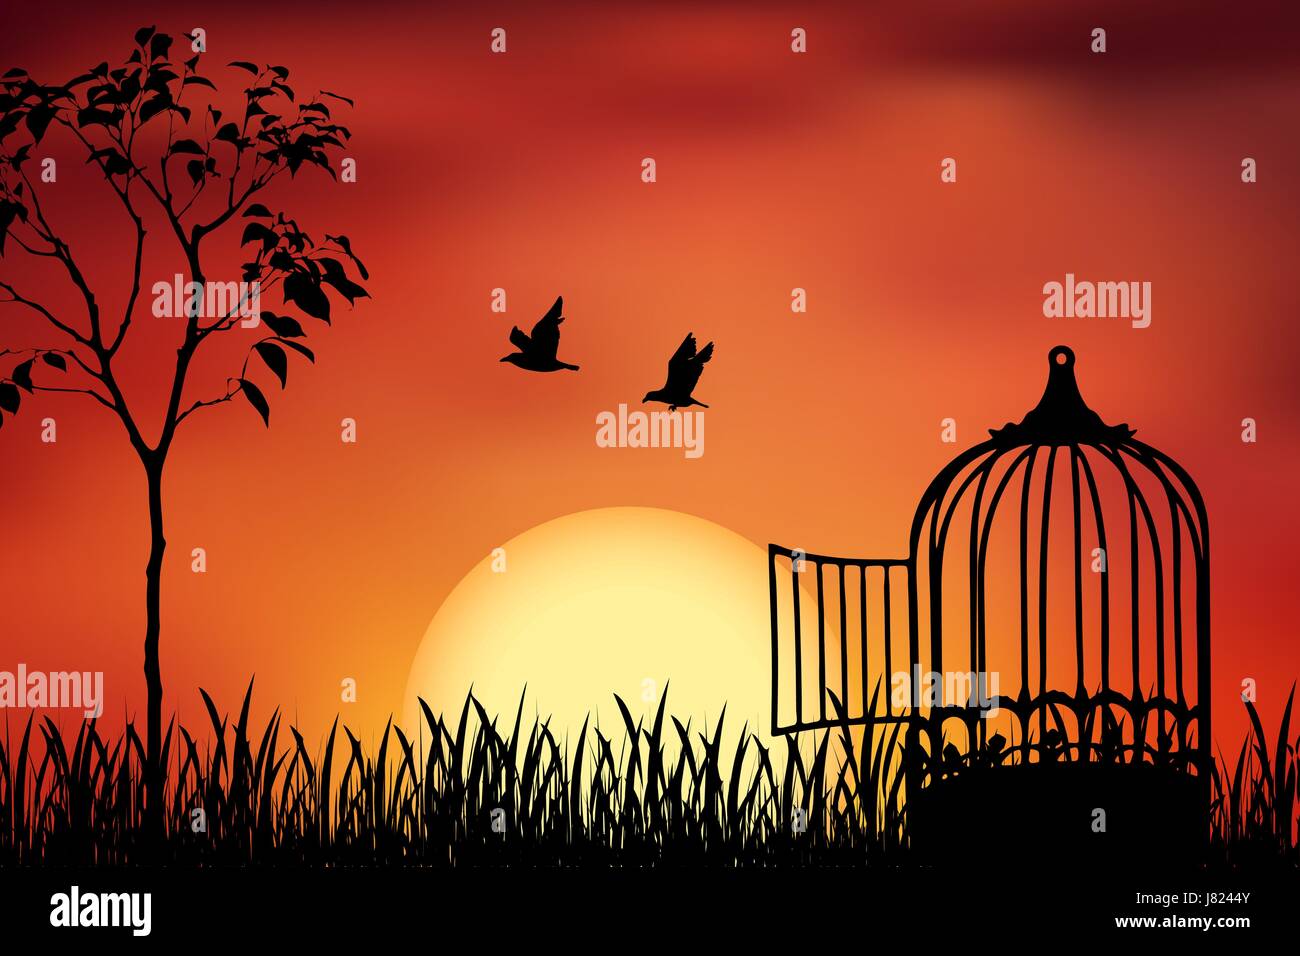 Gli uccelli giovane fuggire da una gabbia, rilasciato per la natura. Bello e positivo illustrazione vettoriale su un arancione tramonto sullo sfondo. Libertà e insieme Illustrazione Vettoriale